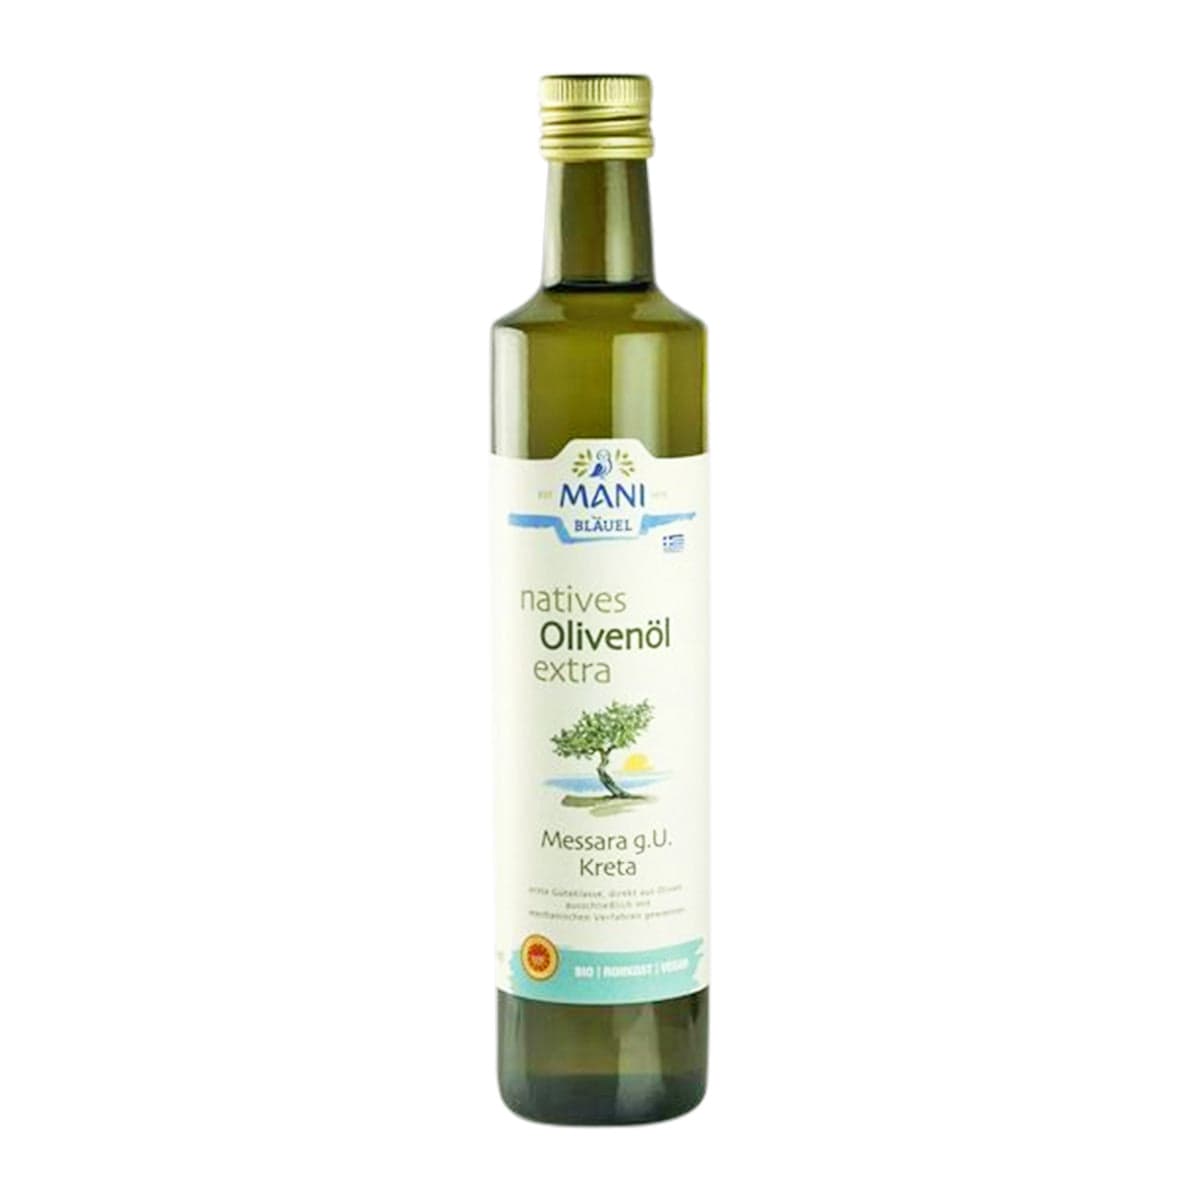 Bio natives Olivenöl extra Messara g.U. Kreta, 500ml